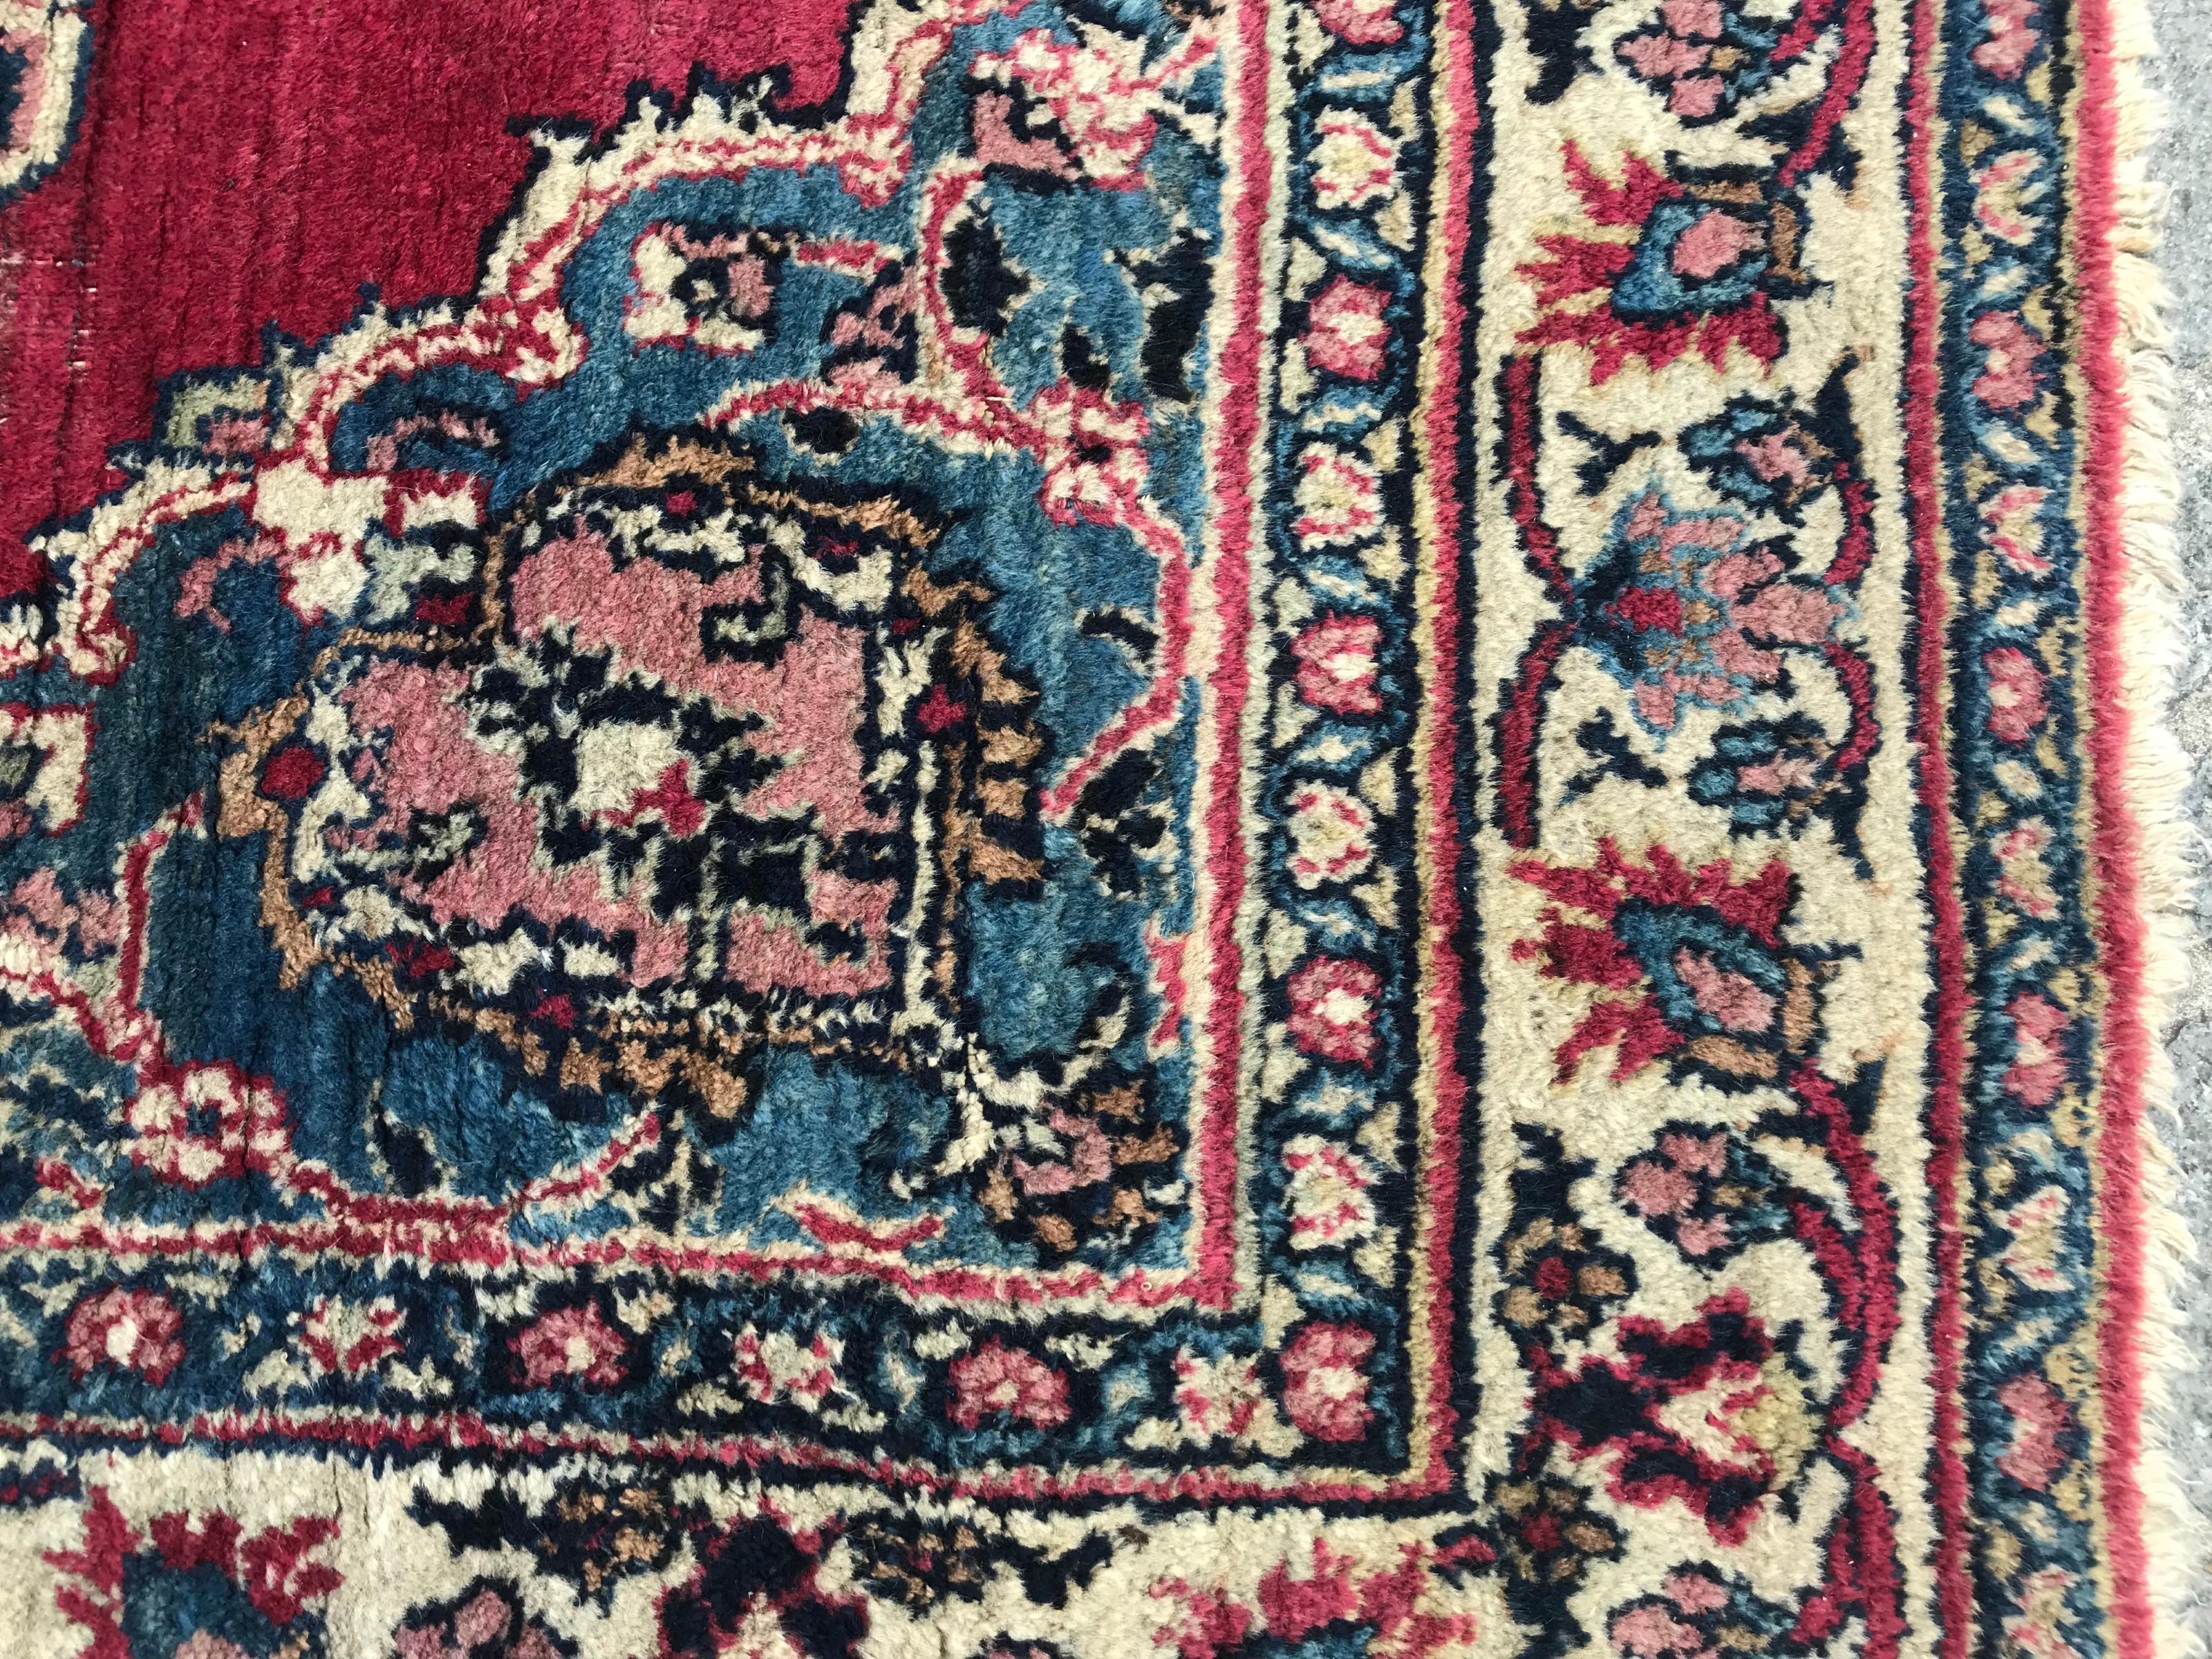 Beau tapis de la fin du 19ème siècle avec un motif central en médaillon et de belles couleurs naturelles avec du bleu, du rouge et du rose, entièrement noué à la main avec du velours de laine sur une base de coton.